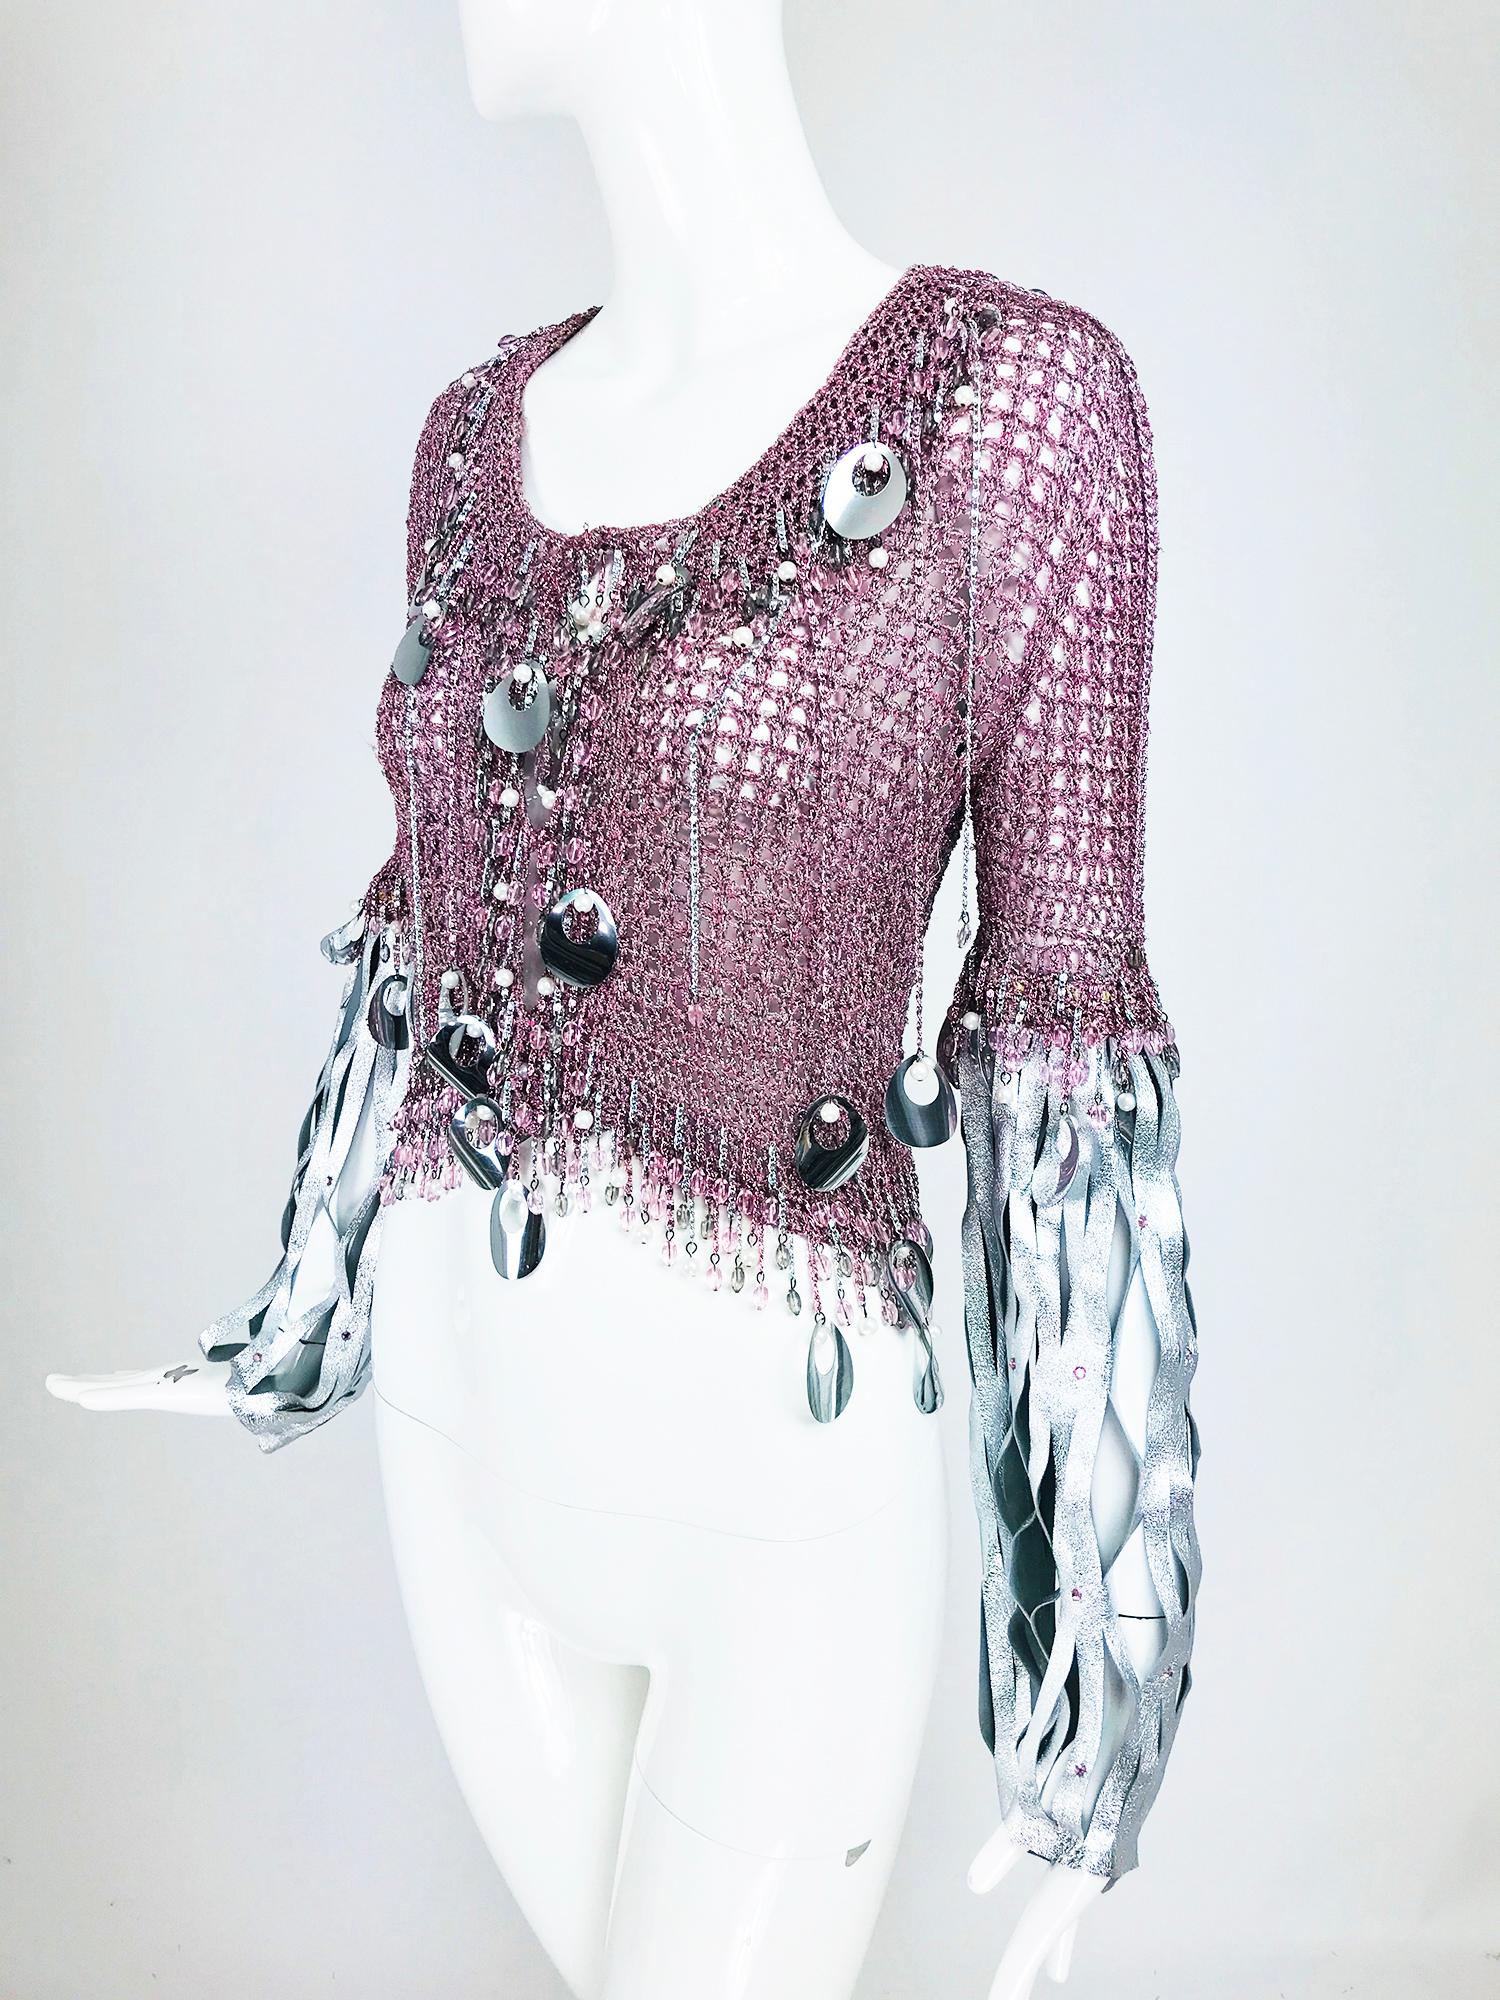 Vintage Loris Azzaro metallic rosa und silberner Lederpullover aus den 1980er Jahren. Rosafarbene und silberne Metallfäden werden zu diesem glitzernden Pullover zusammengehäkelt. Außerdem hat der Pullover am Hals vorne und hinten Metallketten in